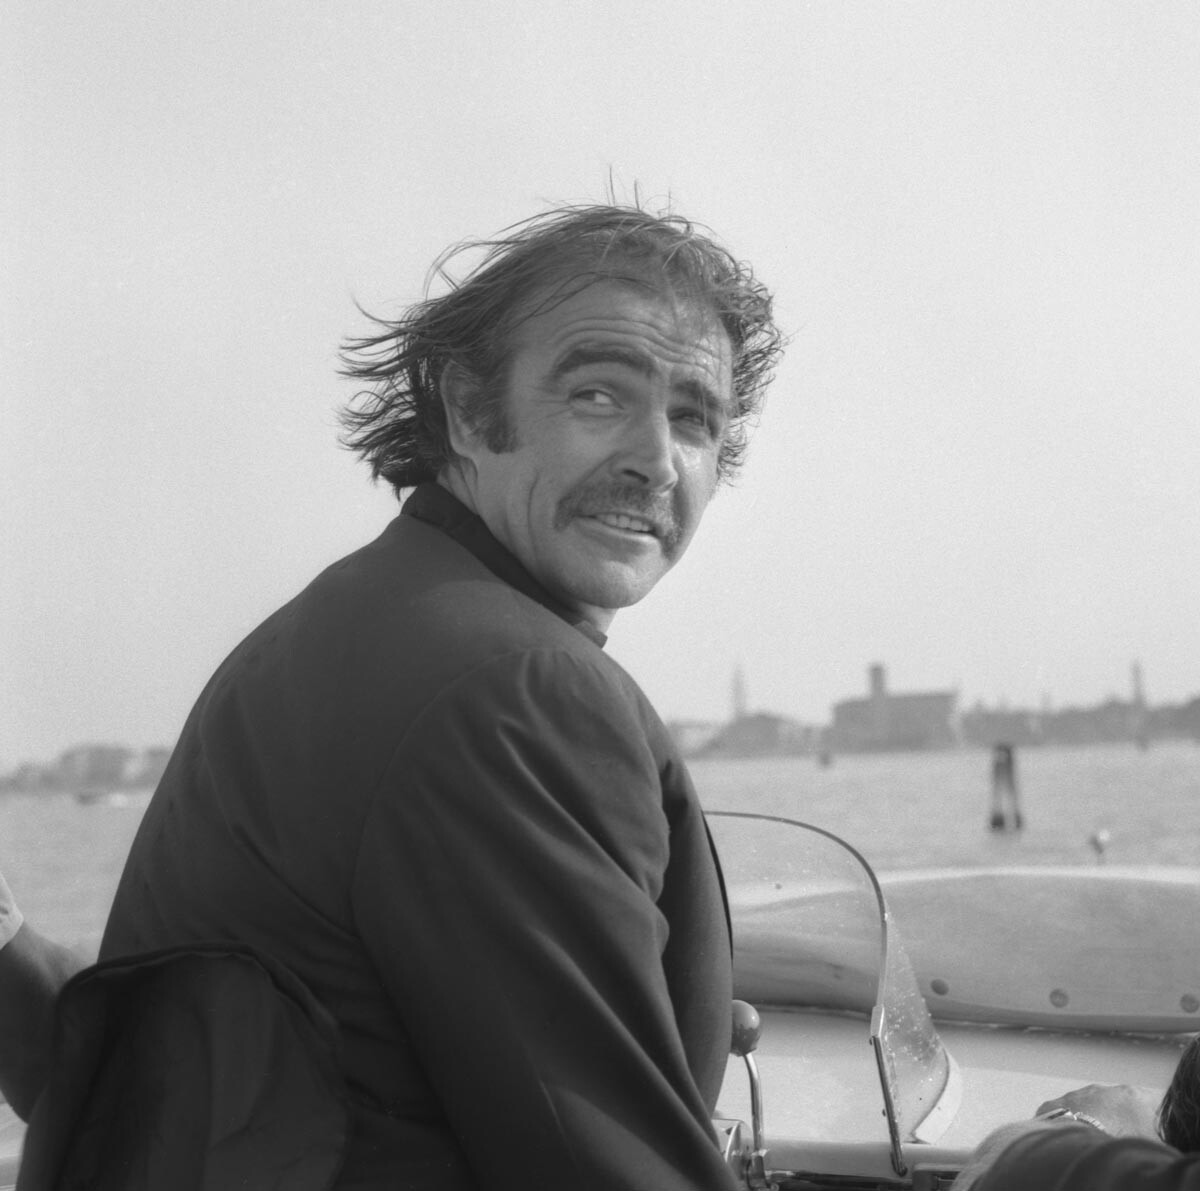 Sean Connery a Venezia, anni '70
